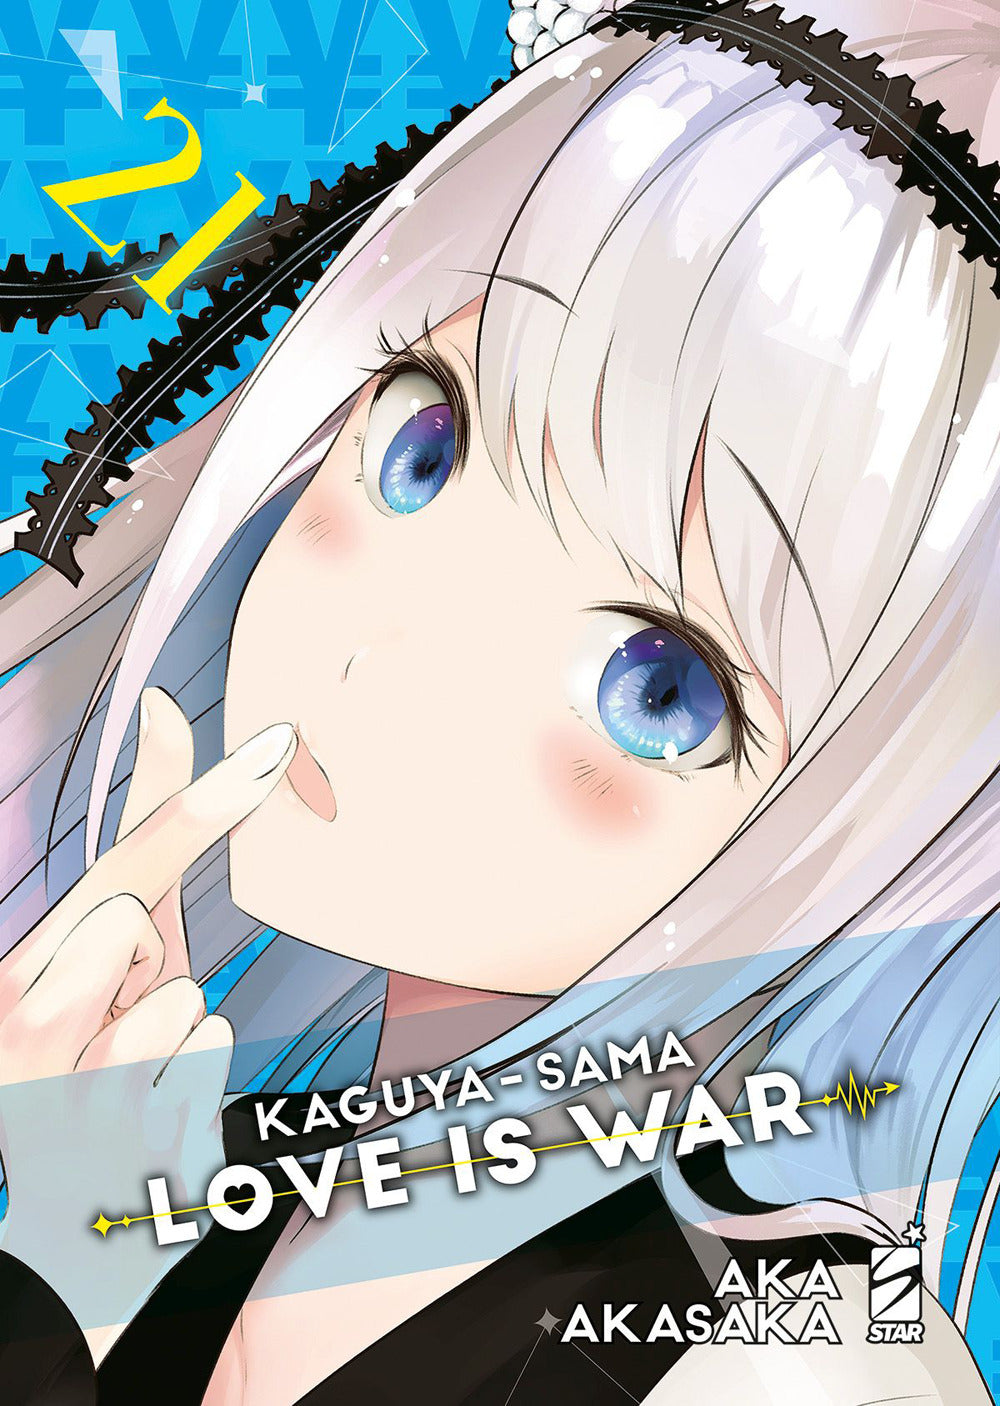 Kaguya-sama. Love is war. Vol. 21